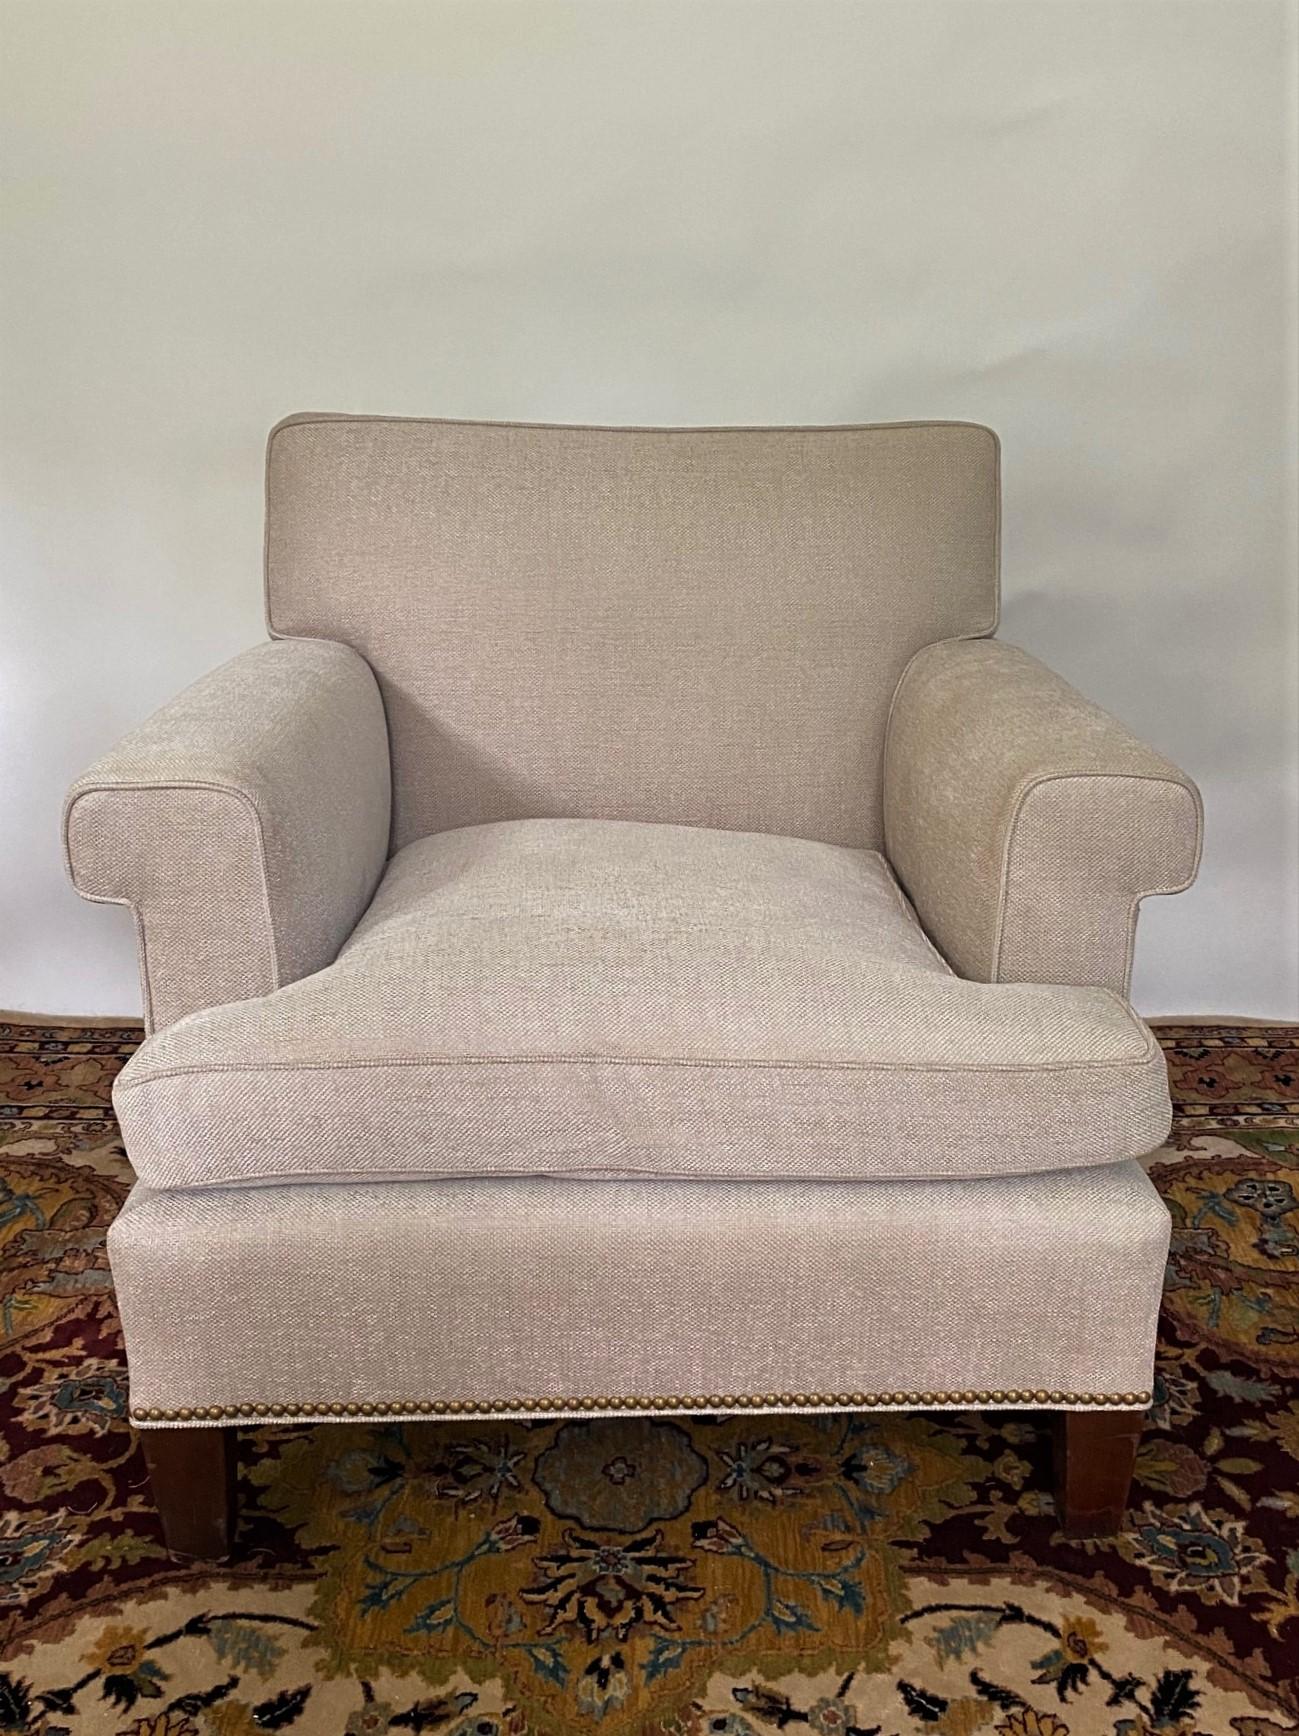 Cette chaise longue de style Lawson est un meuble confortable et classique qui incarne un design intemporel. Il présente un dossier droit et des accoudoirs carrés, offrant une silhouette nette et épurée qui complète différents styles